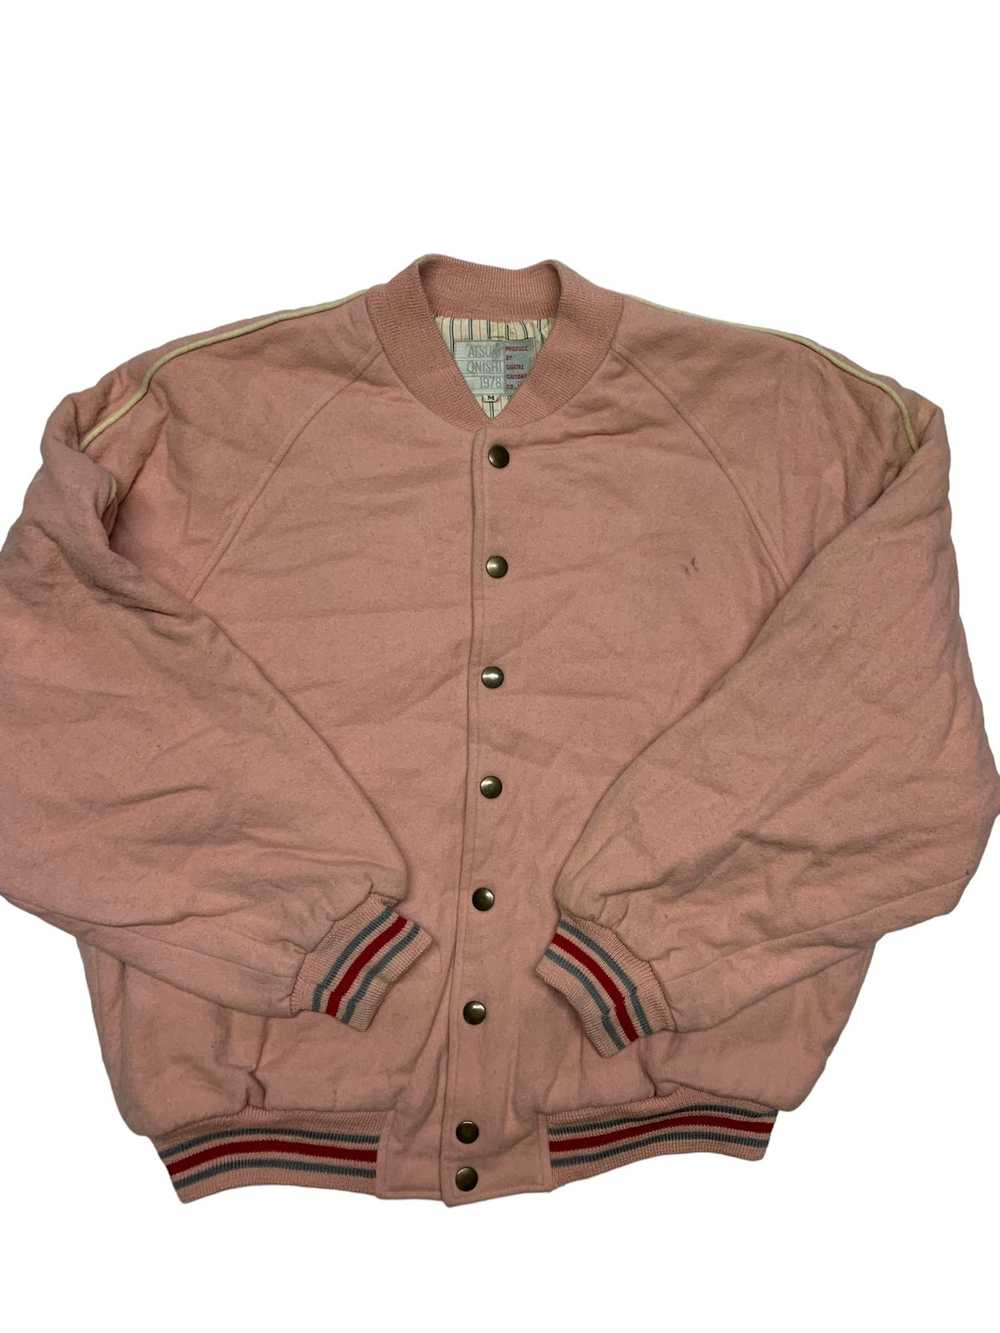 Varsity Jacket Atsuki onishi 1978 produce by quat… - image 6